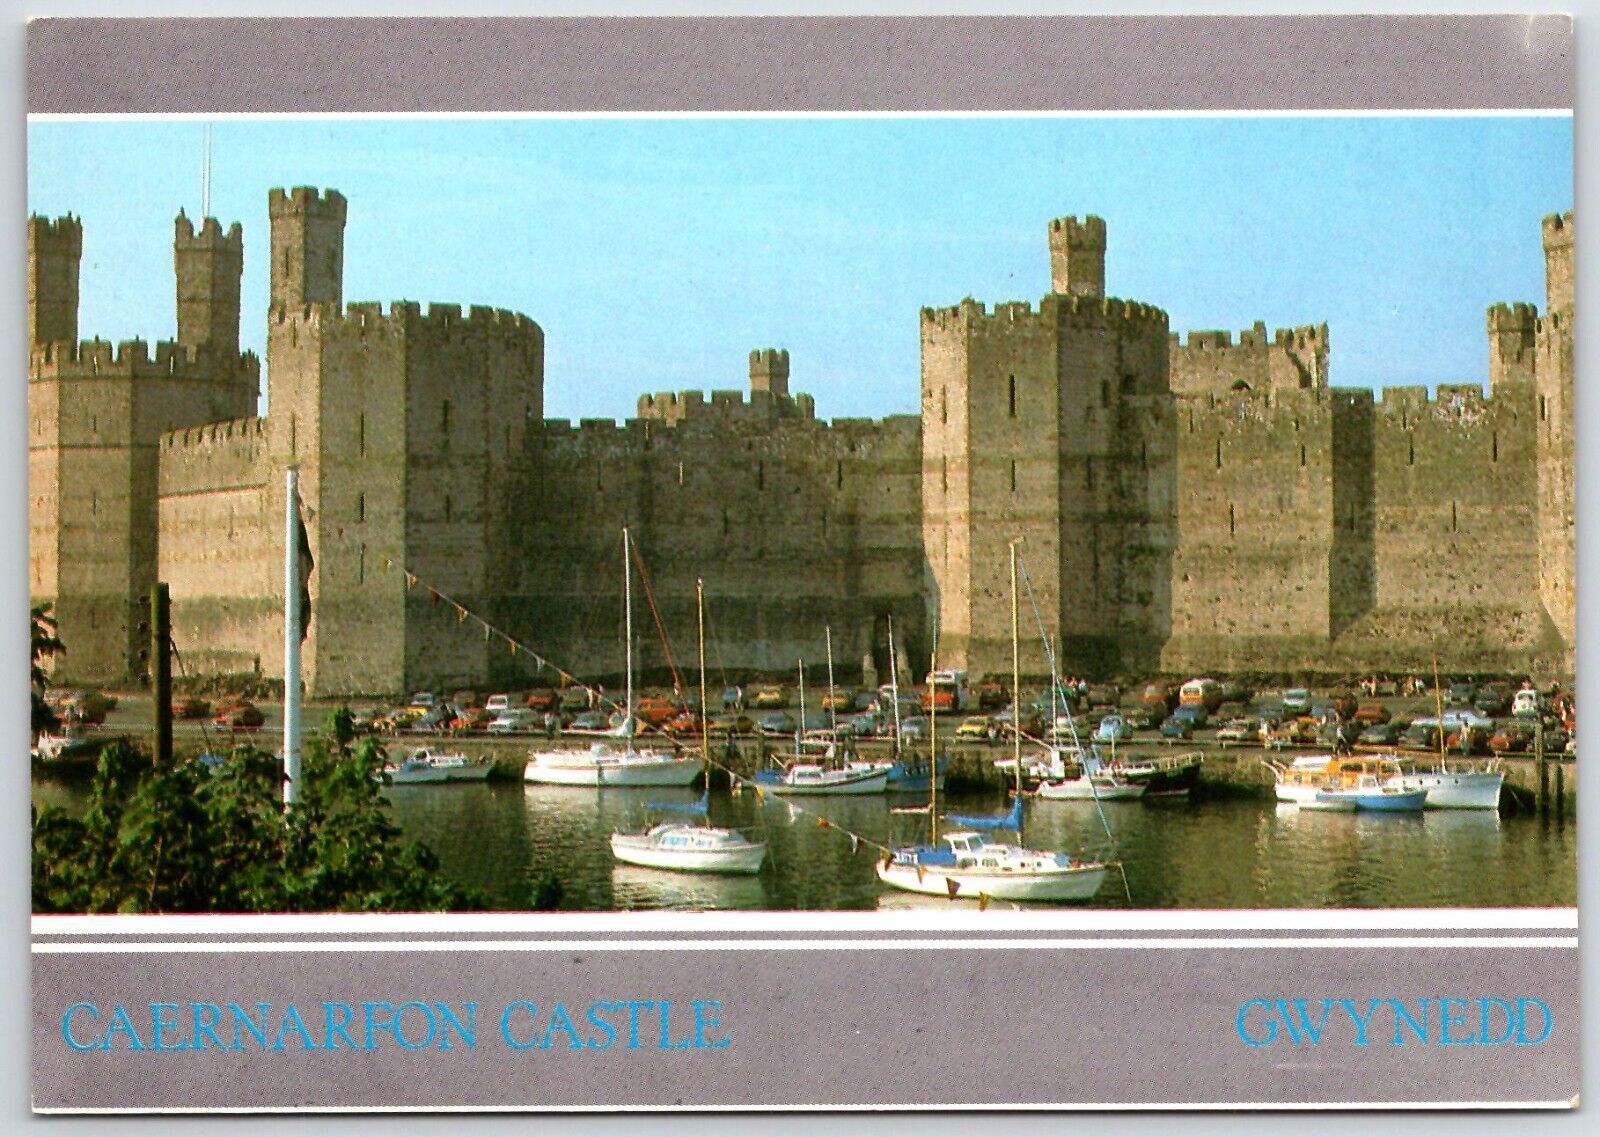 Continental Size Postcard - Caernarfon Castle - Gwynedd - Wales United Kingdom